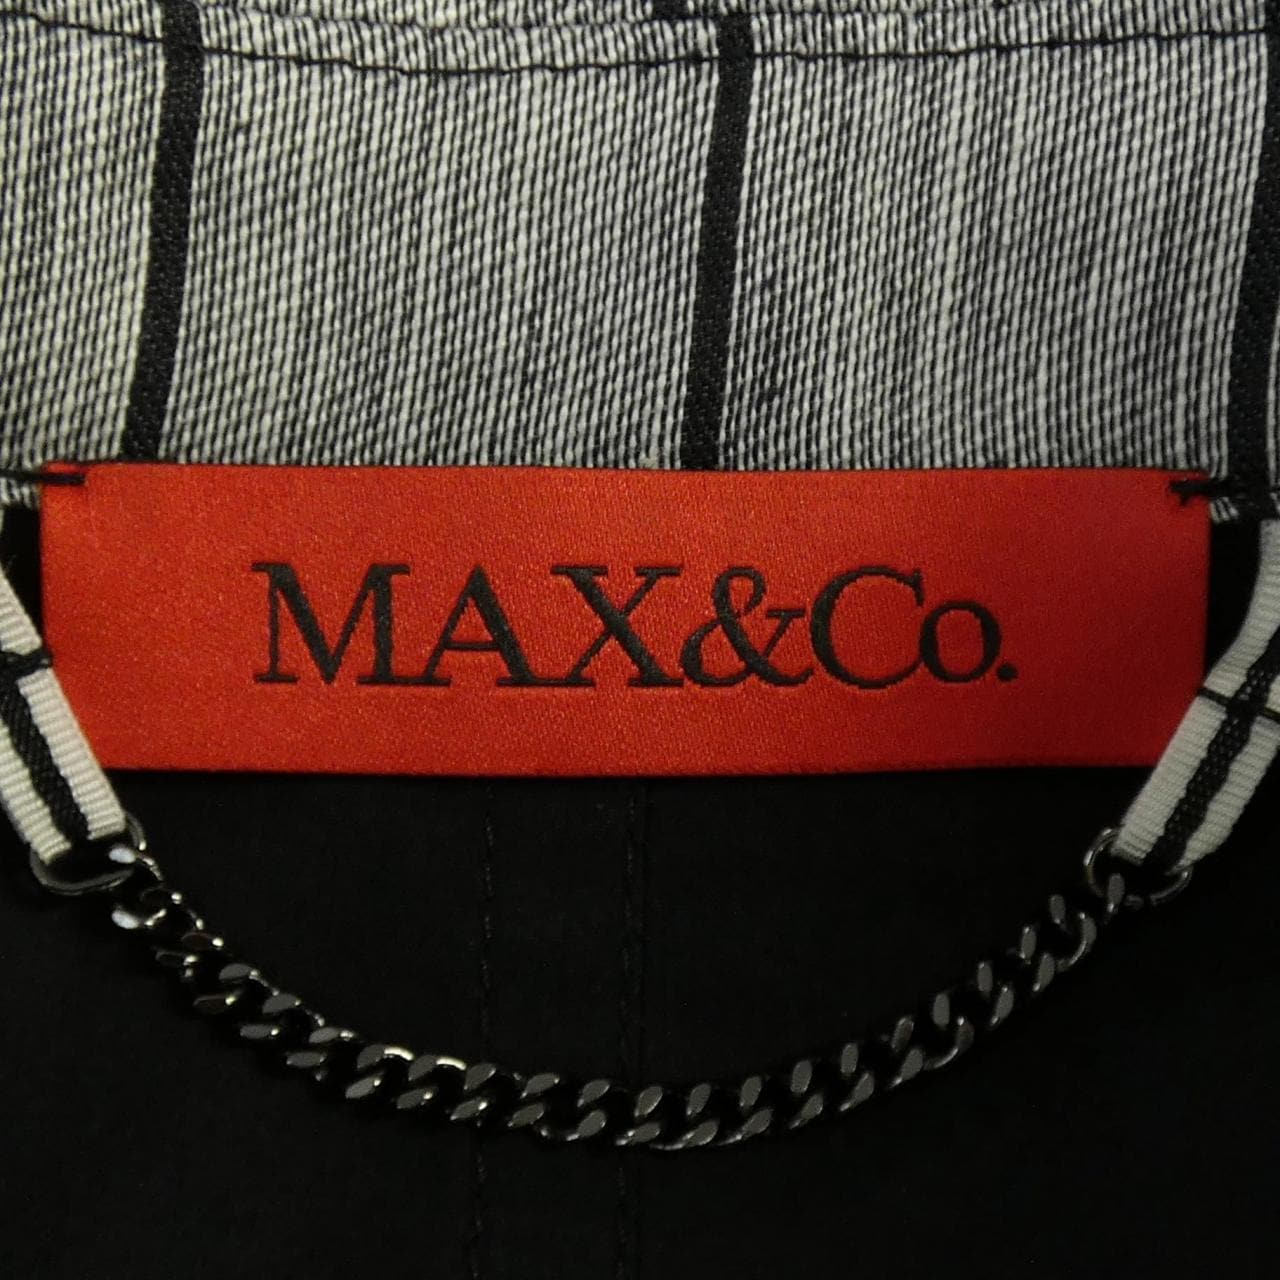 マックスアンドコー Max & Co ジャケット